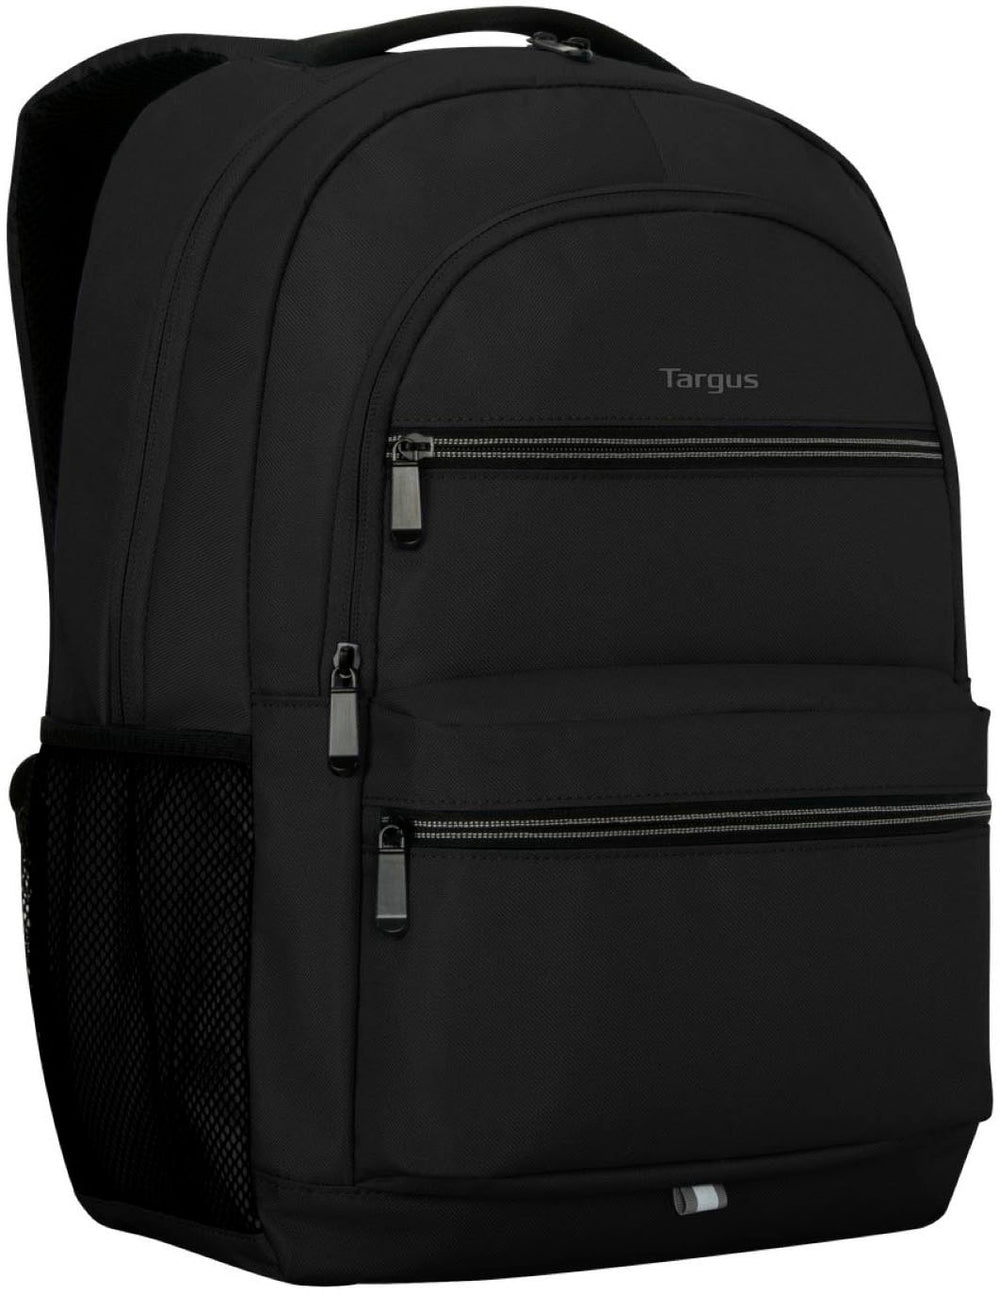 Targus - Octave II Backpack for 15.6” Laptops - Black_1